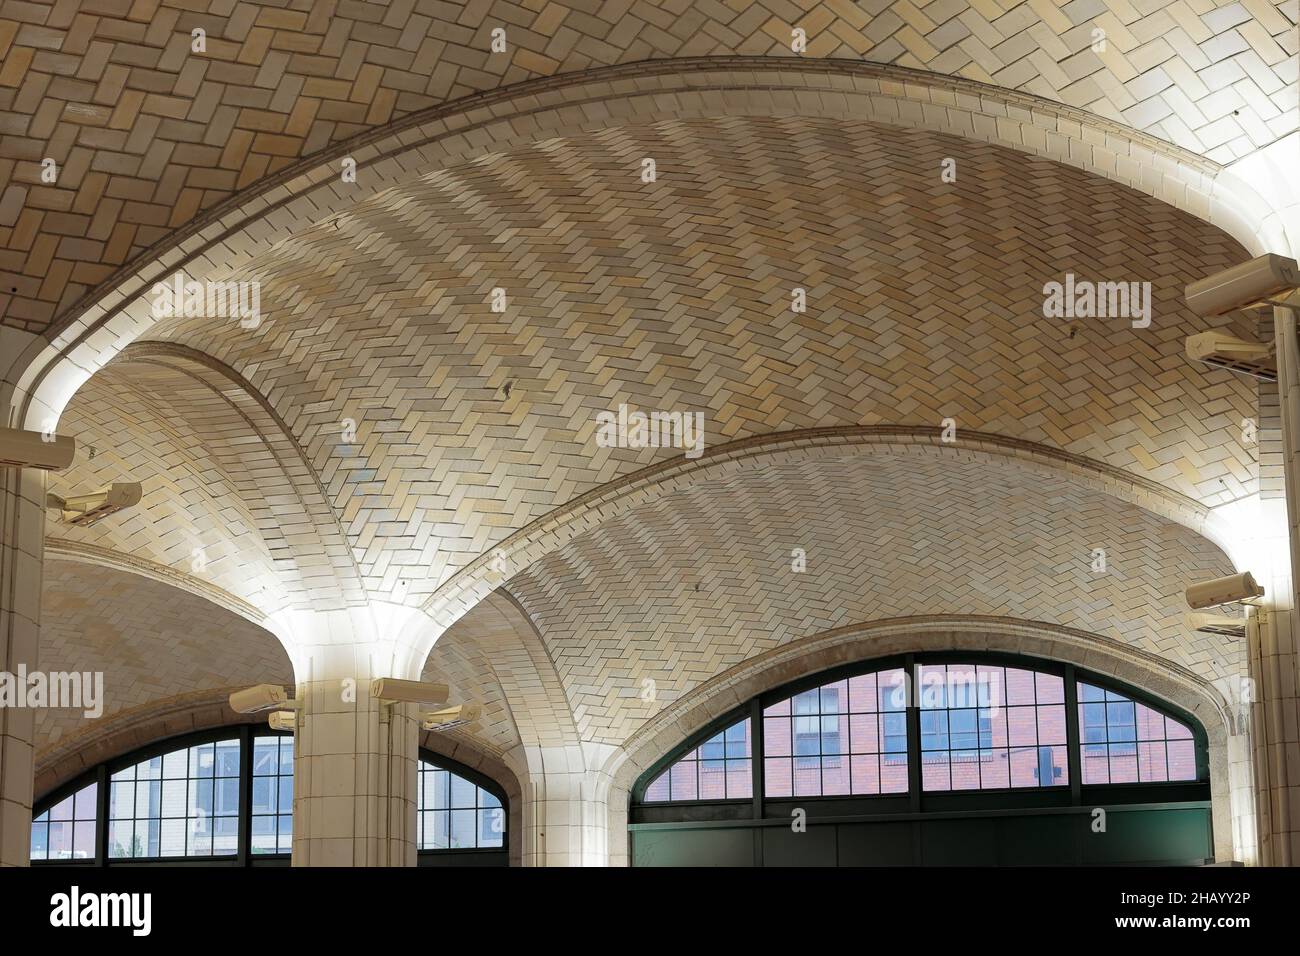 Un techo de bóveda de azulejos de terracota Guastavino dentro de un edificio en Nueva York, NY. Rafael Guastavino era famoso por su sistema de azulejos entrelazados y arcos Foto de stock